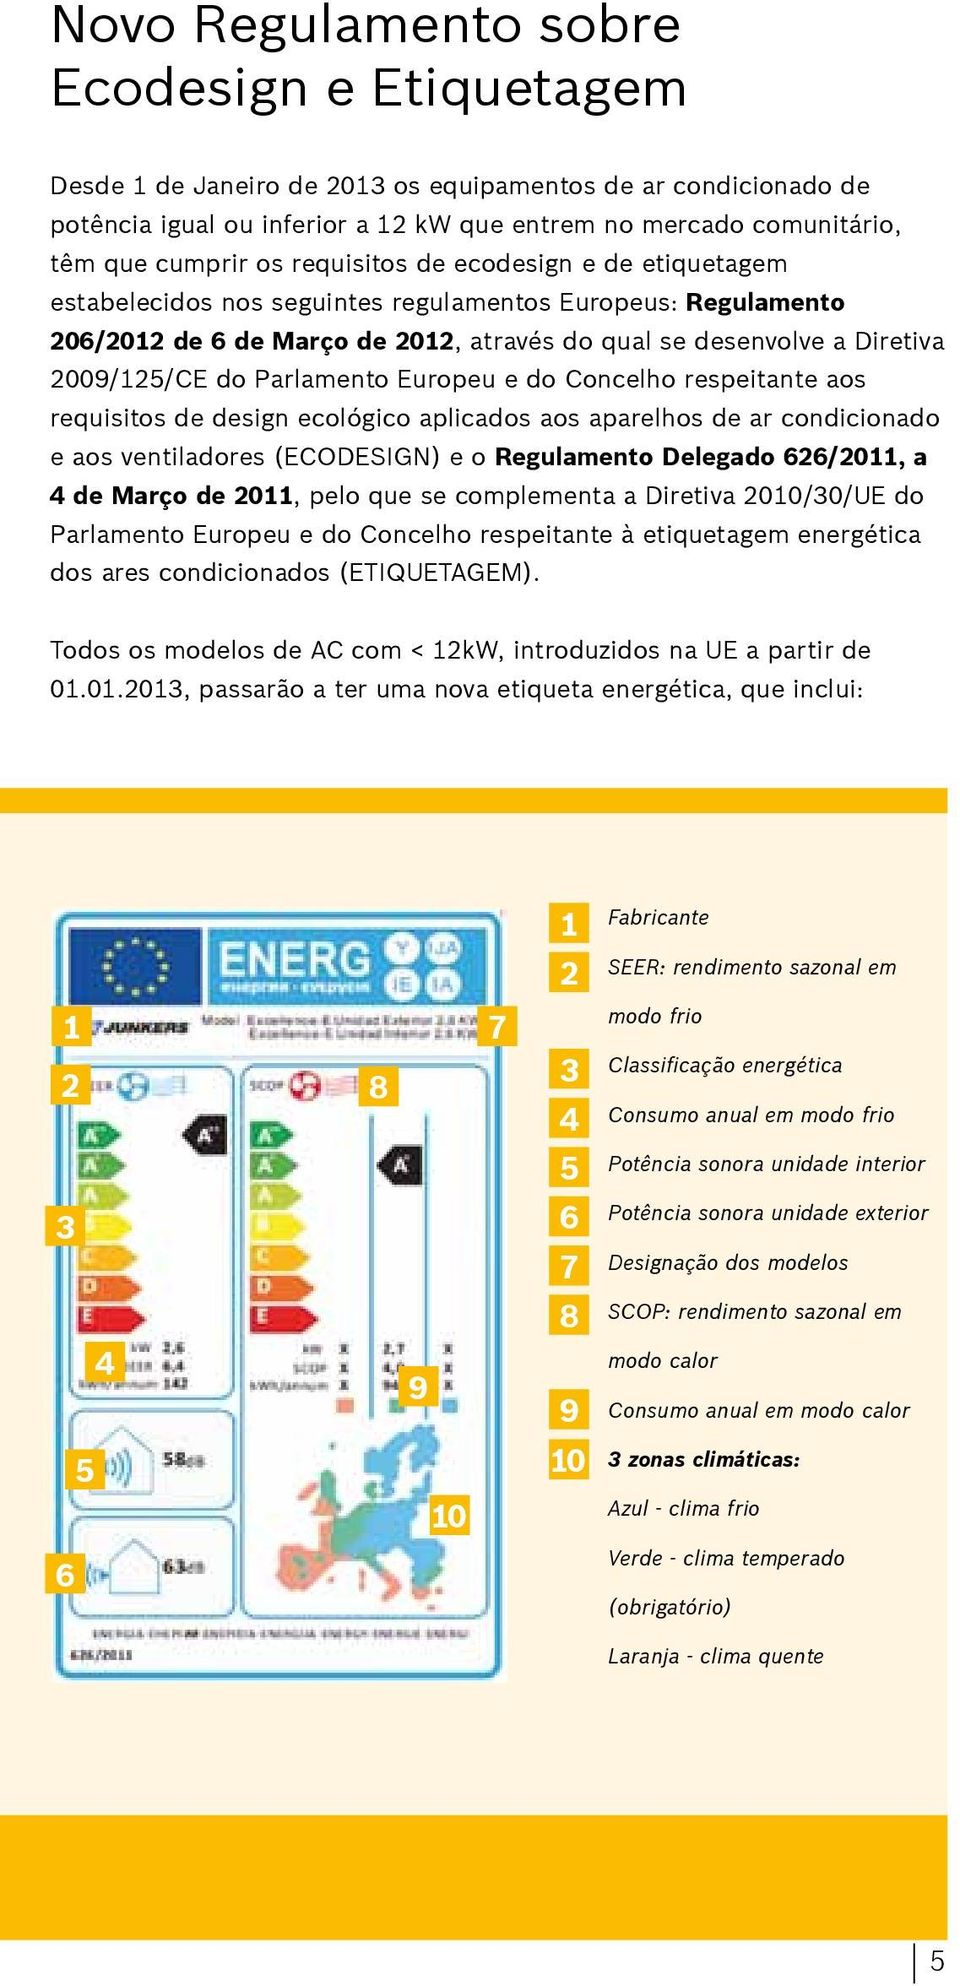 Parlamento Europeu e do Concelho respeitante aos requisitos de design ecológico aplicados aos aparelhos de ar condicionado e aos ventiladores (ECODESIGN) e o Regulamento Delegado 626/2011, a 4 de